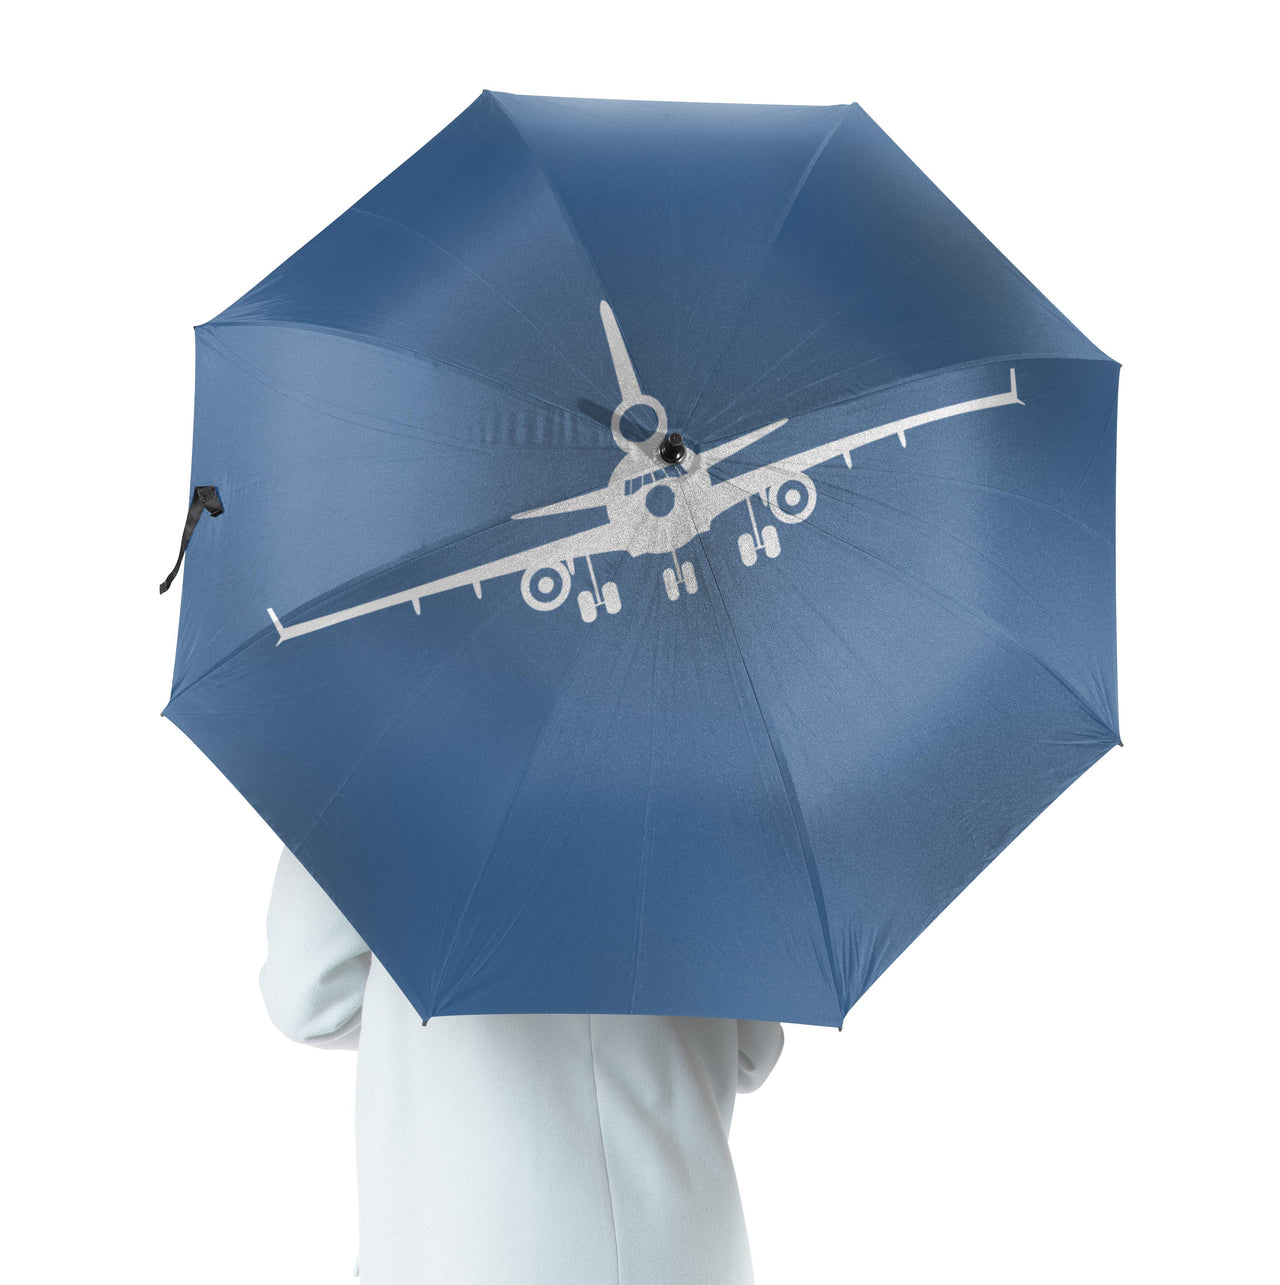 McDonnell Douglas MD-11 Silhouette Plane Designed Umbrella